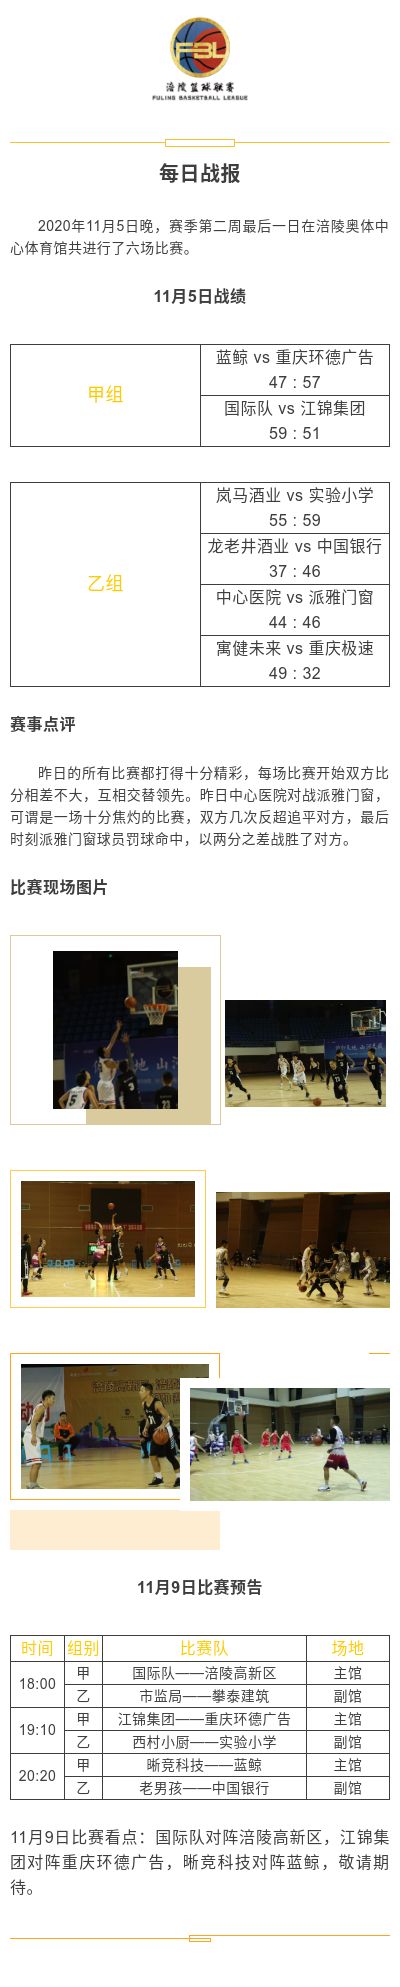 涪陵高新区·涪陵篮球联赛（FBL）2020赛季每日战报11.5